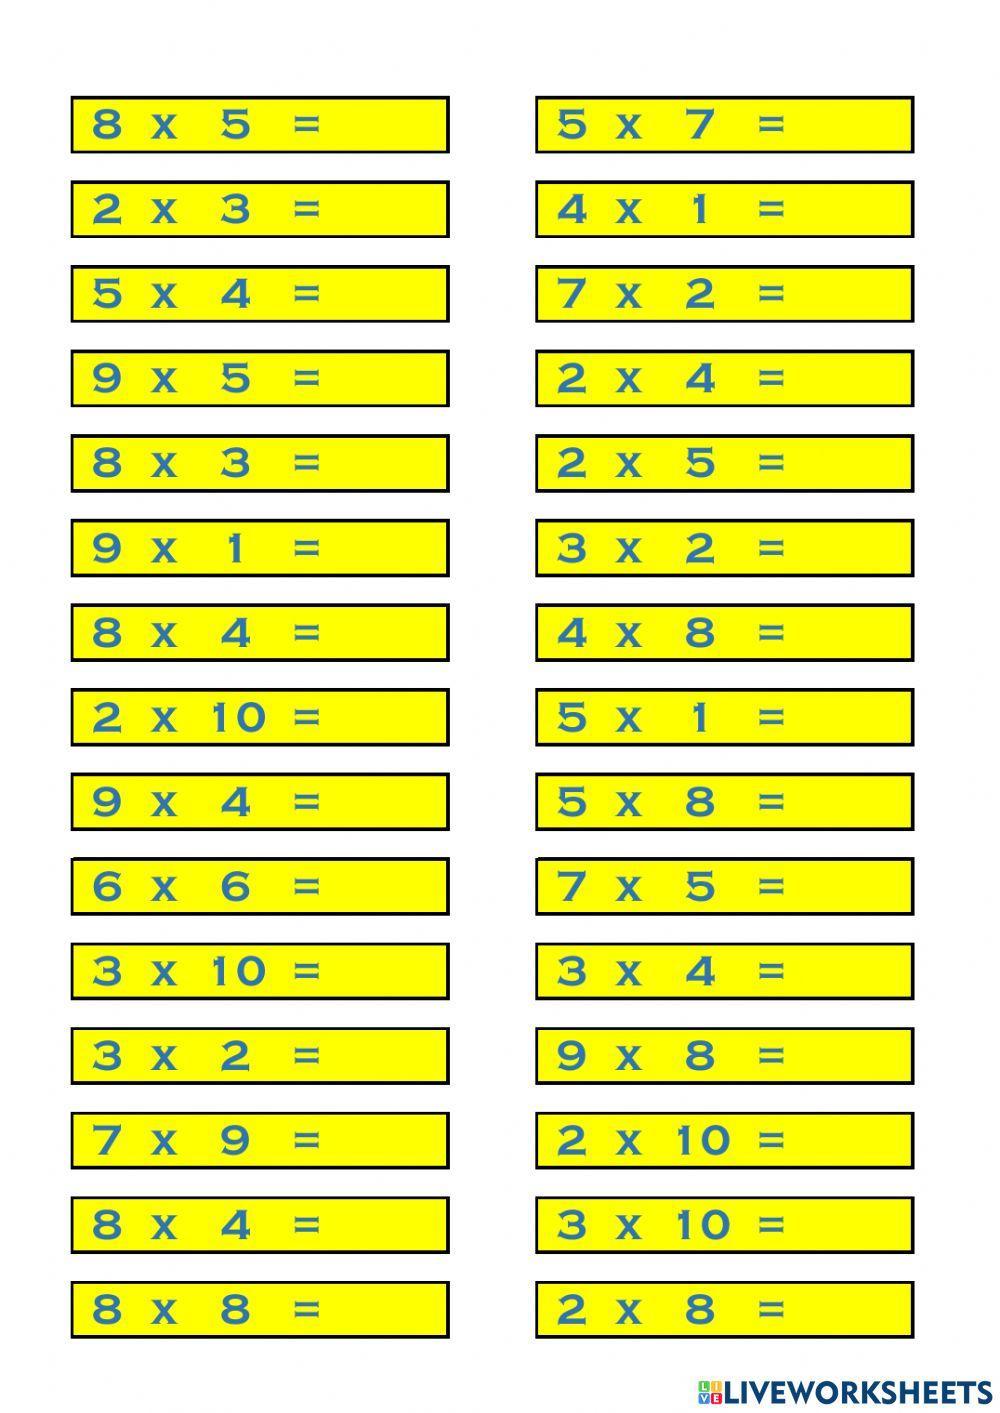 Tabla de Multiplicar - 2